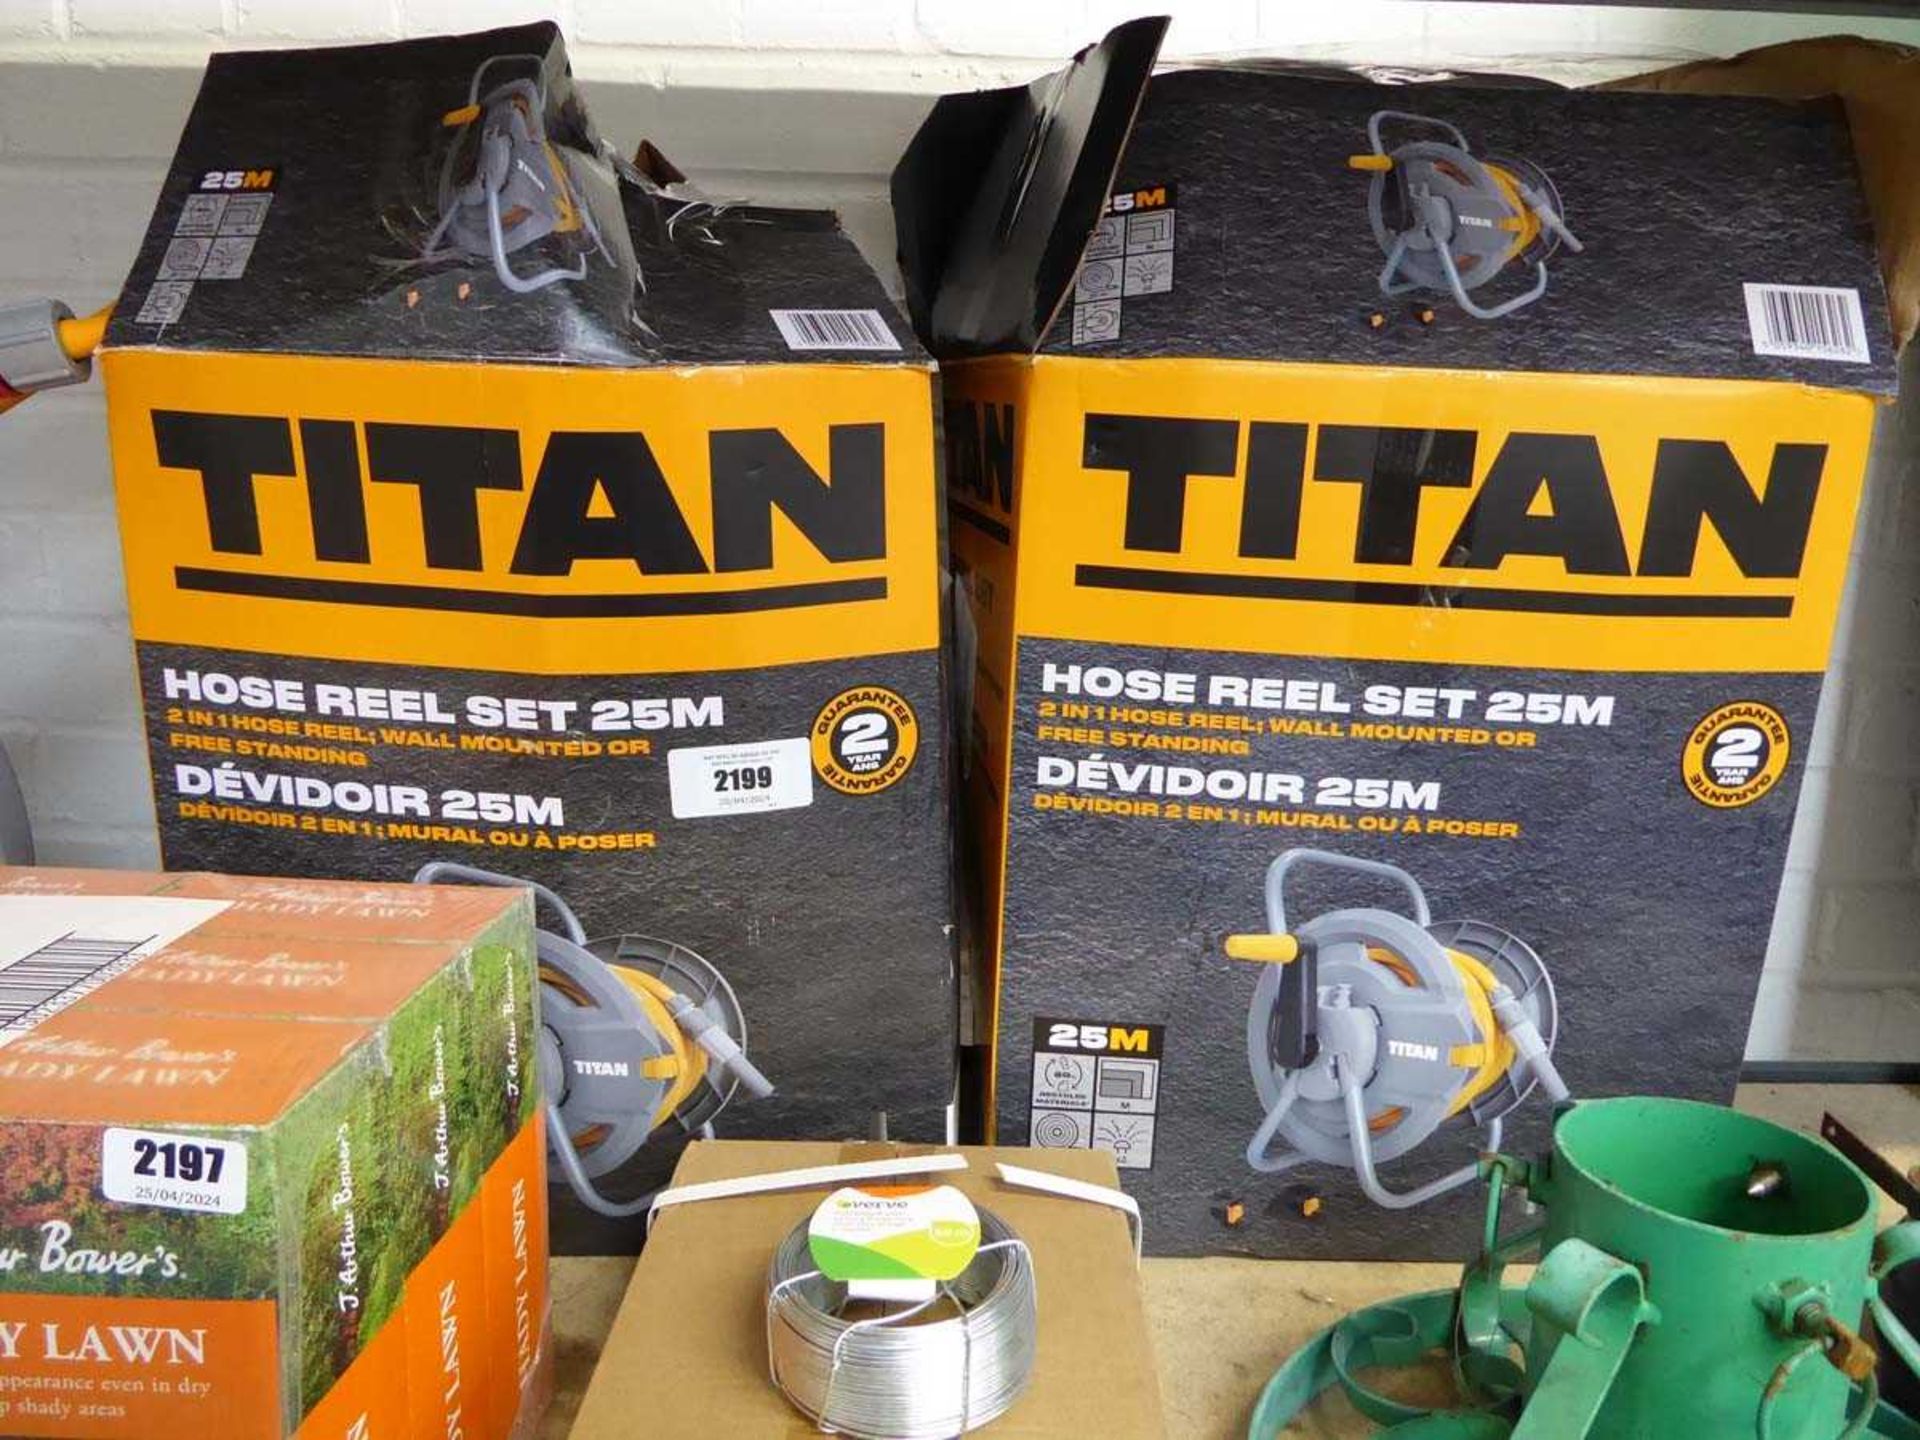 +VAT 2 Titan 25m. hose reel sets